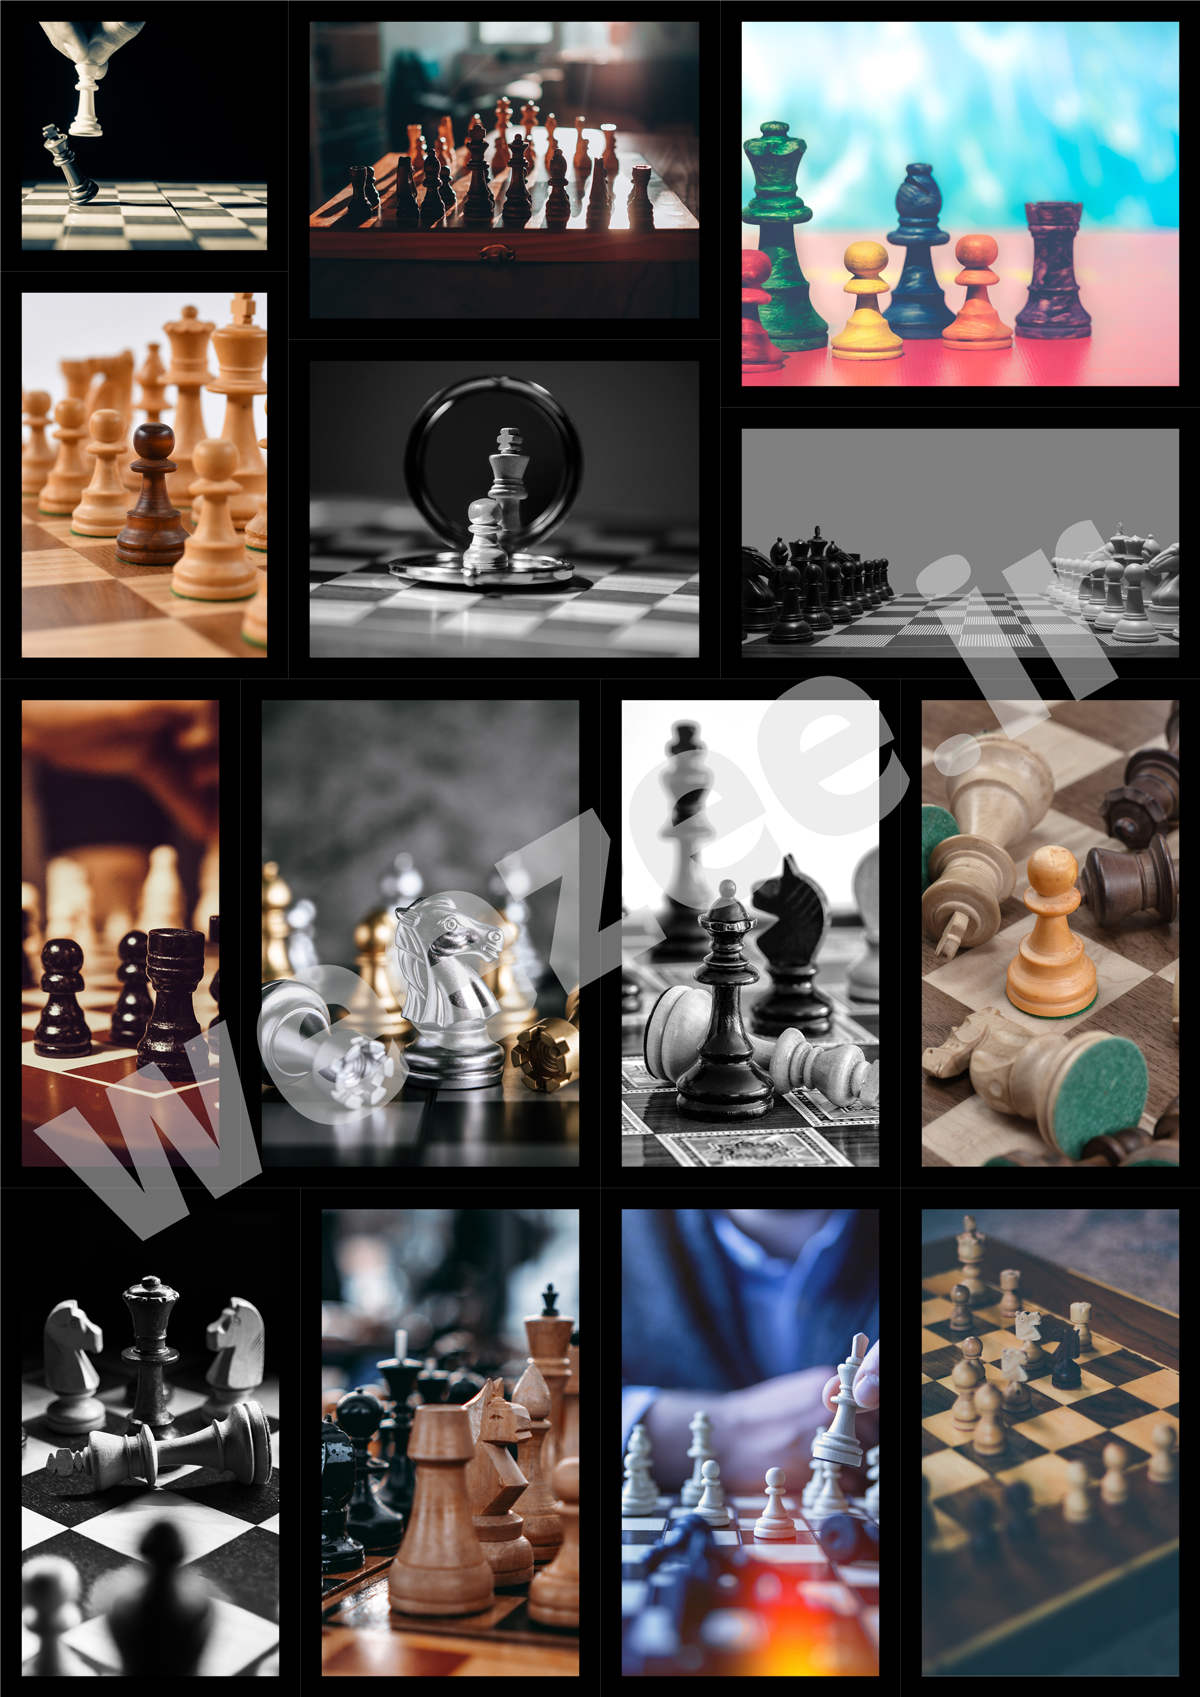 دانلود تصاویر باکیفیت شطرنج - ویزی